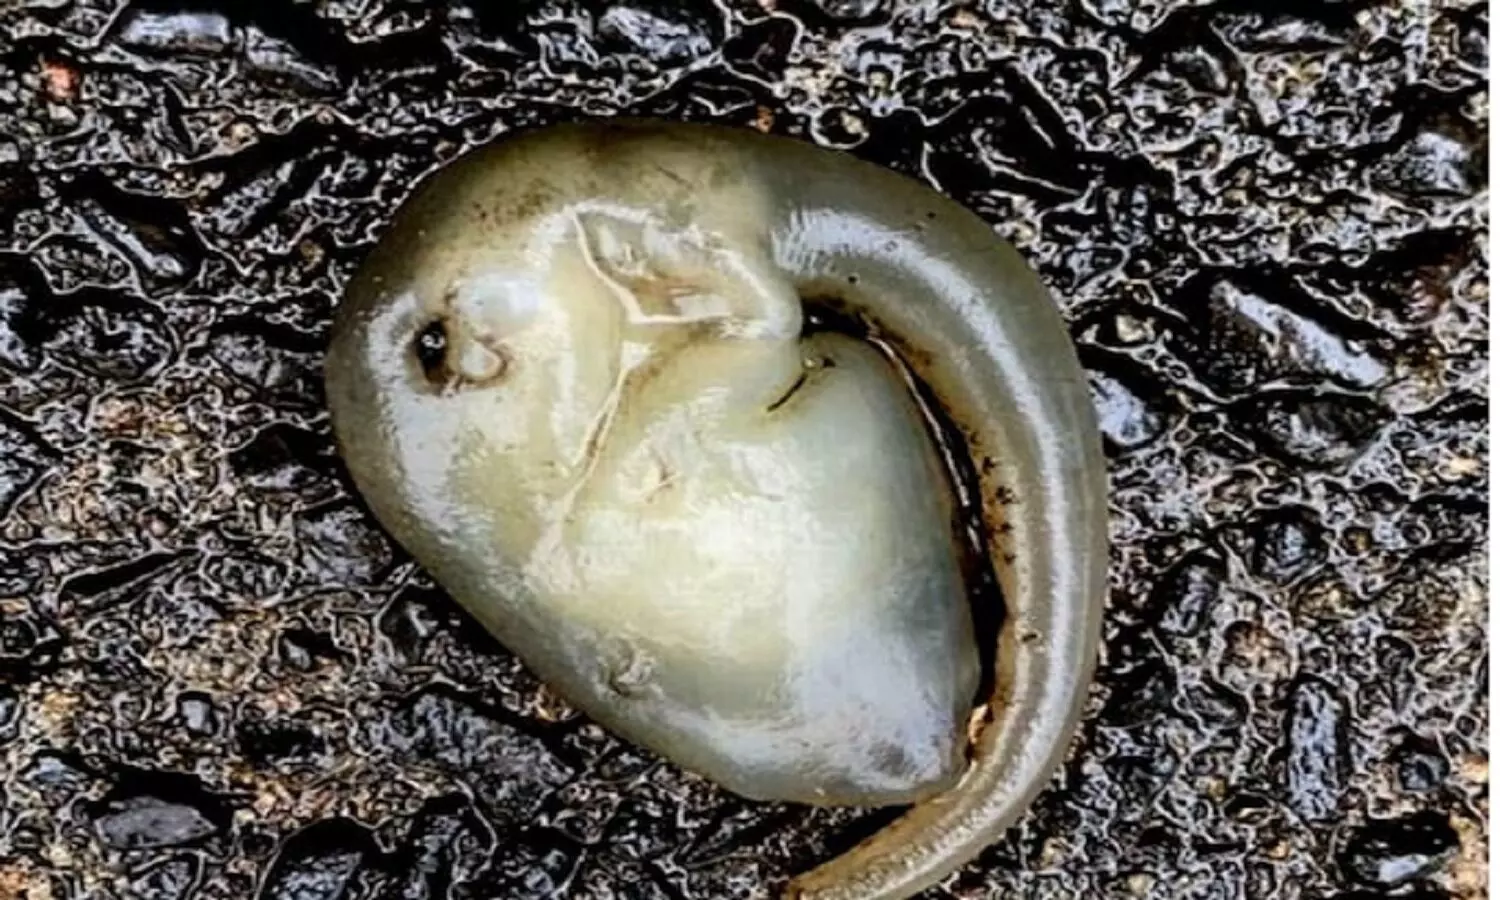 Alien Embryo Australia: ऑस्ट्रेलिया में एक एलियन भ्रूण मिला है, वैज्ञानिक समझ नहीं पा रहे यह कौन सा जानवर है